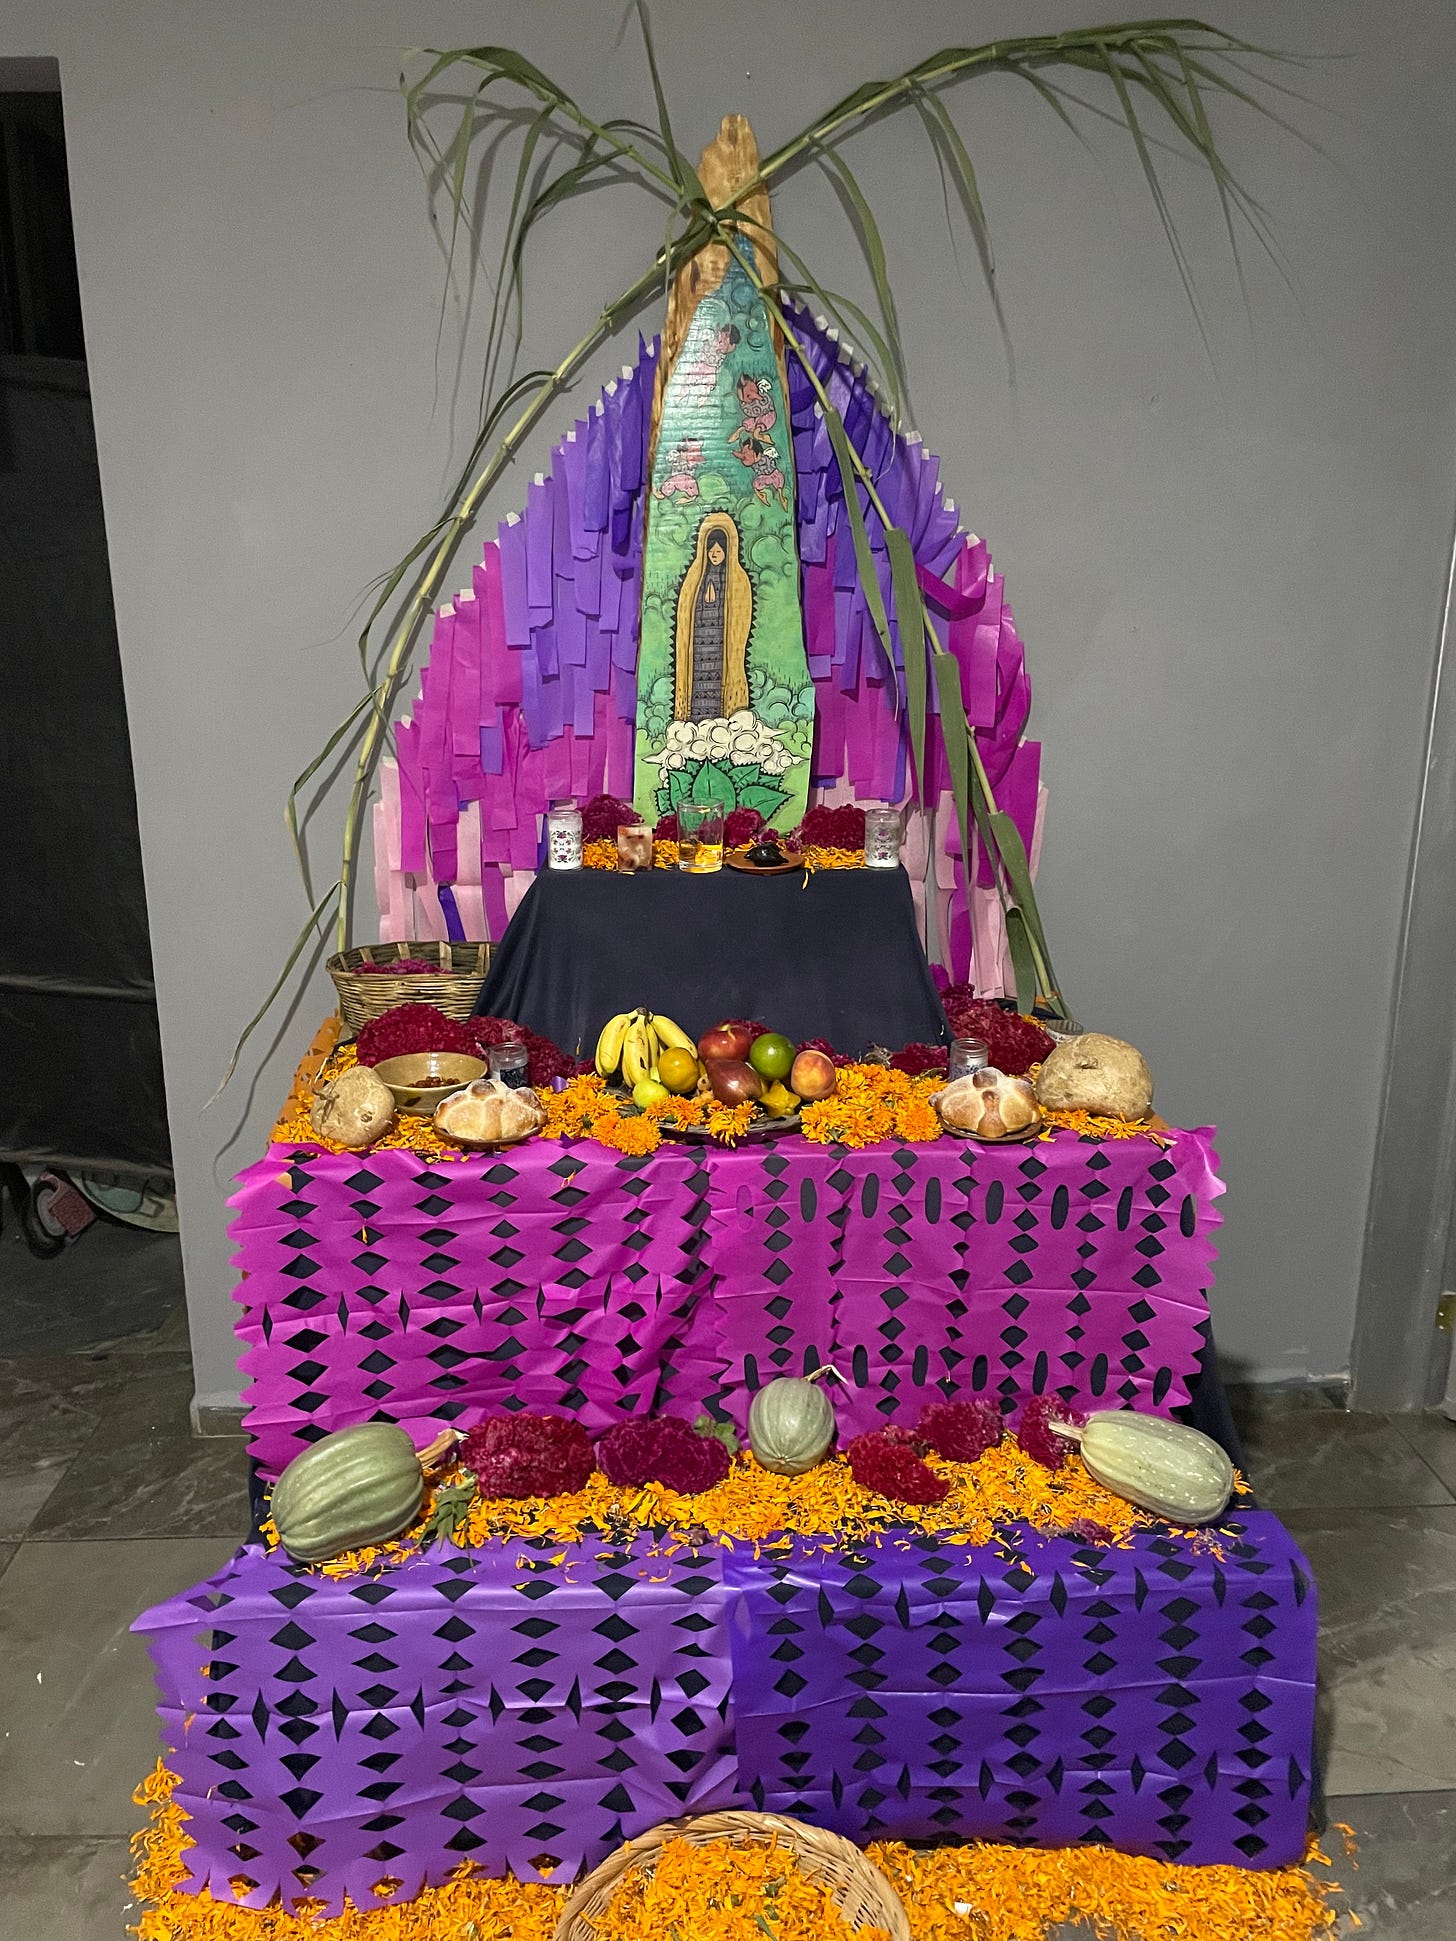 A photo of an ofrenda, an altar to celebrate the Mexican Day of the Dead (Día de Muertos).